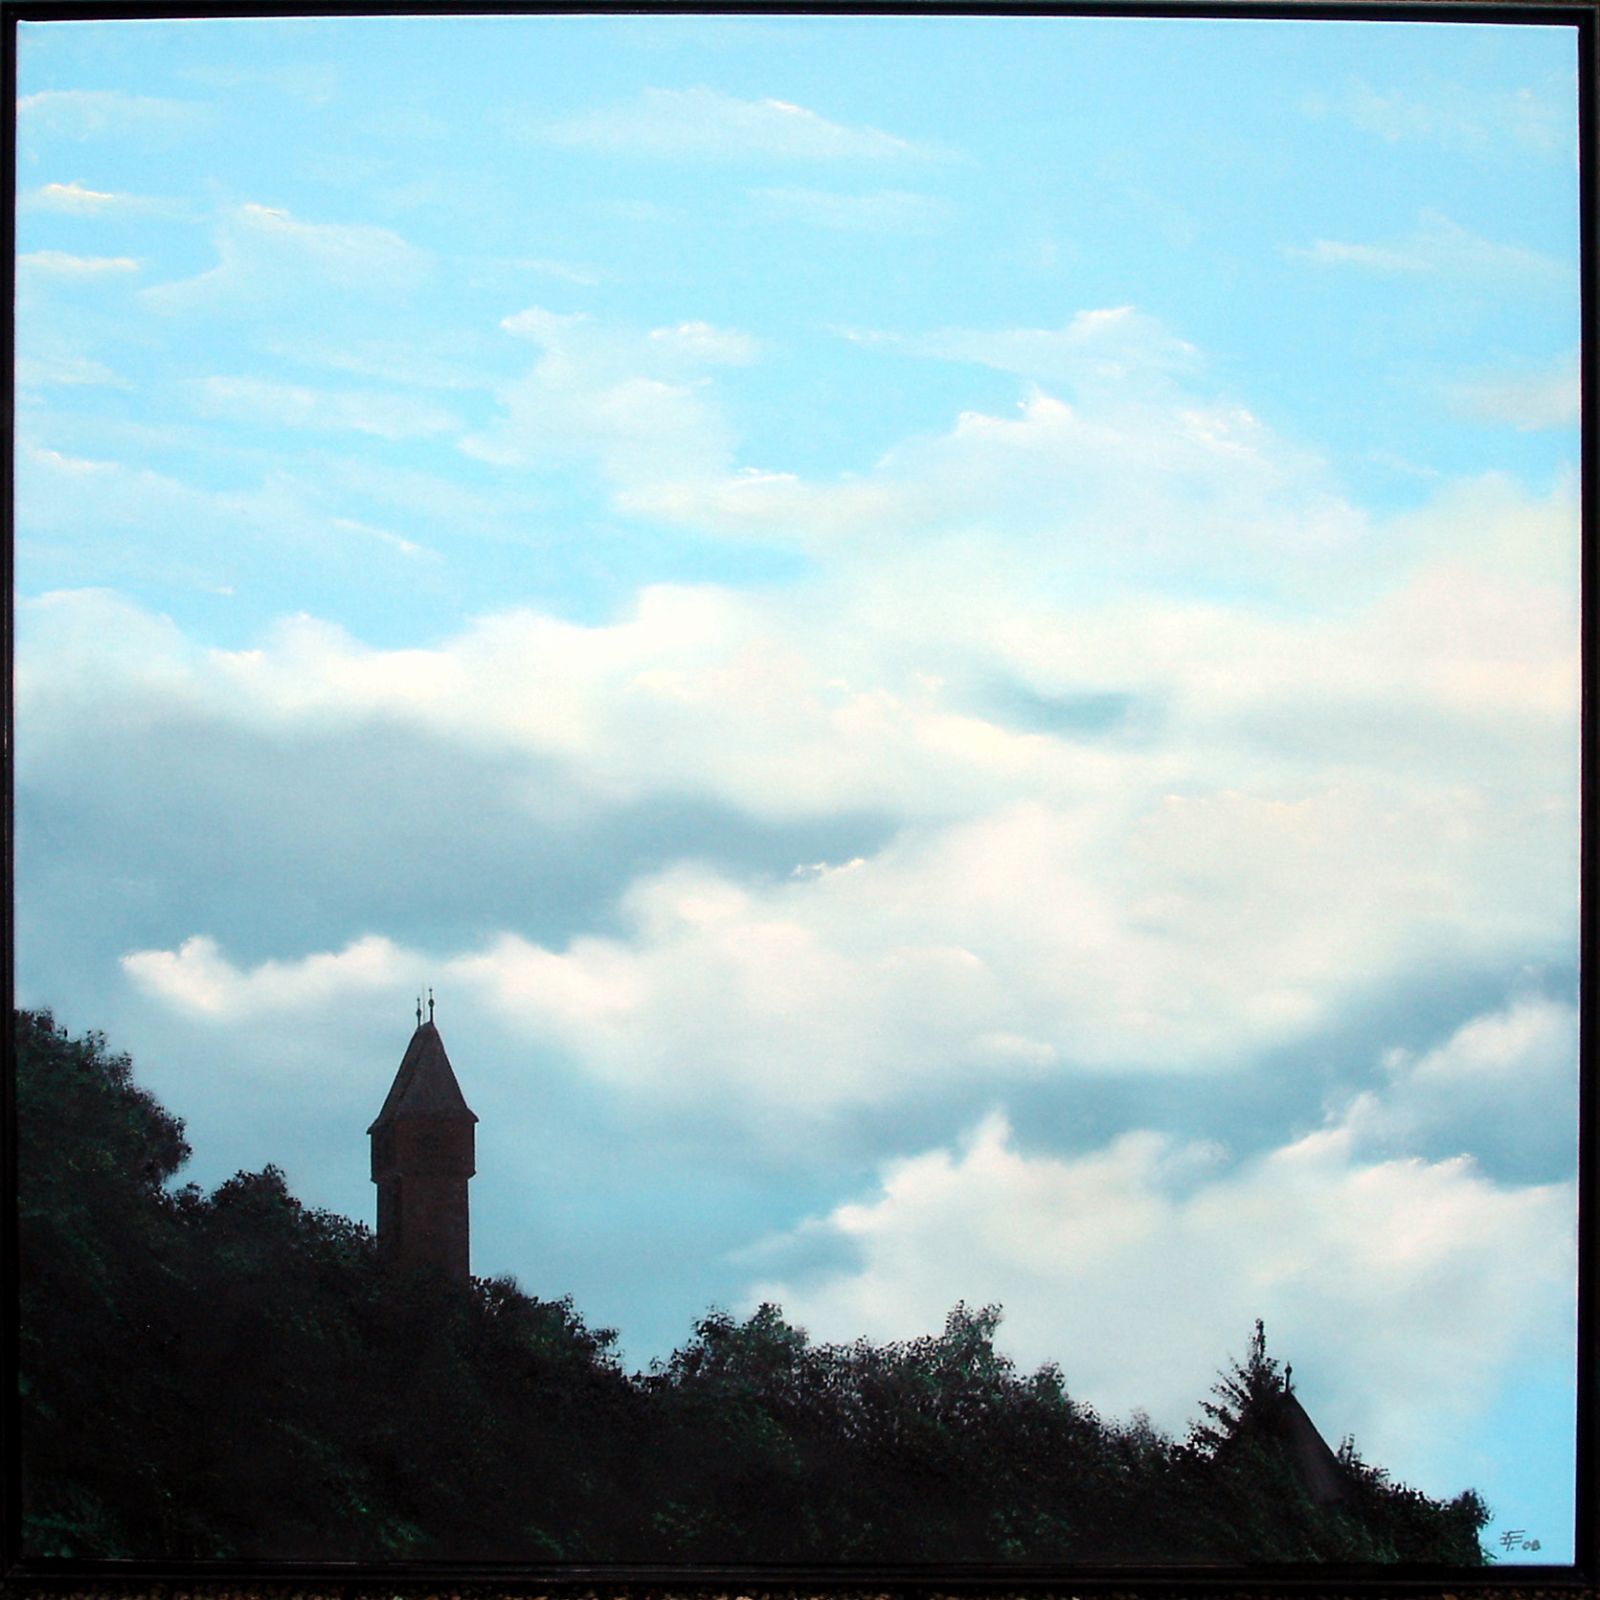 Himmel über Schloss Hirschhorn